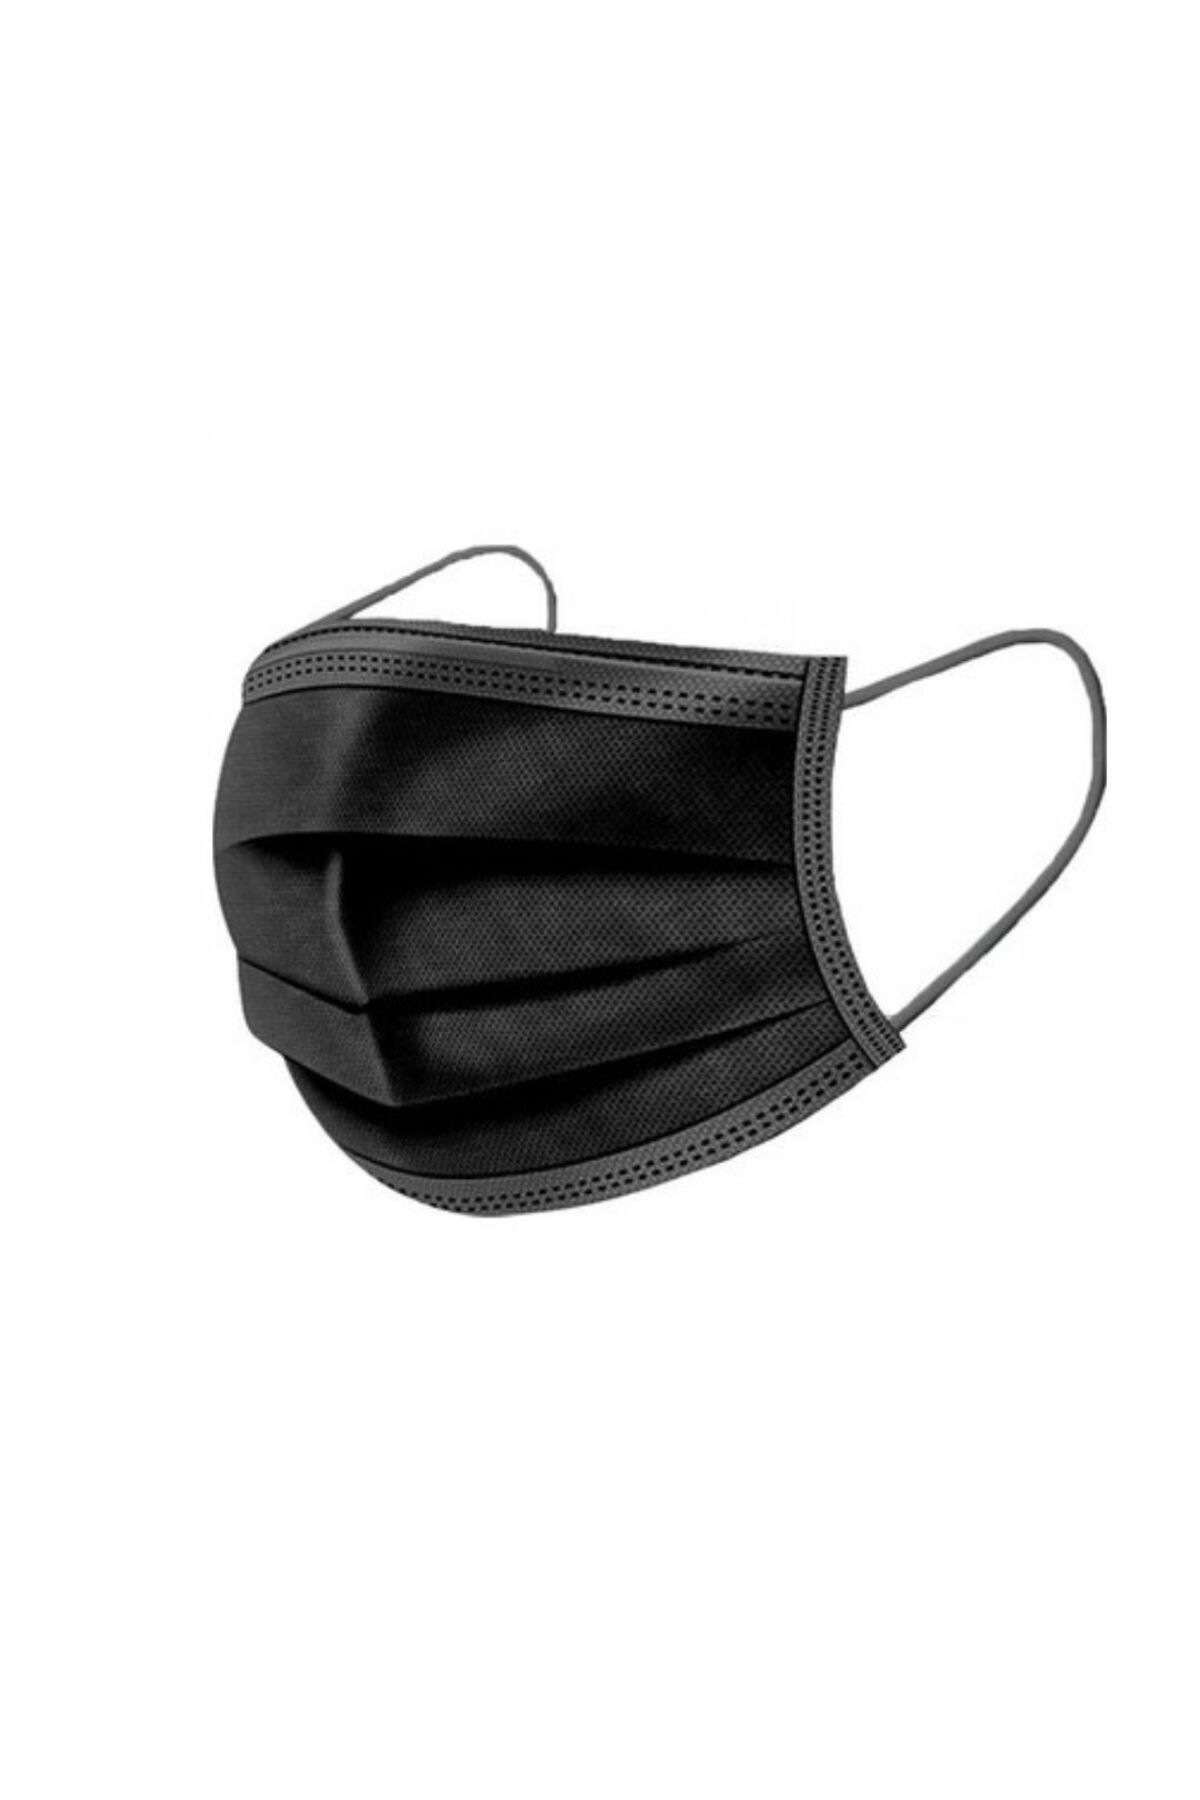 İPEKYOLU Disposable Yeni Nesil 3 Katlı Cerrahi Maske 50 Adet